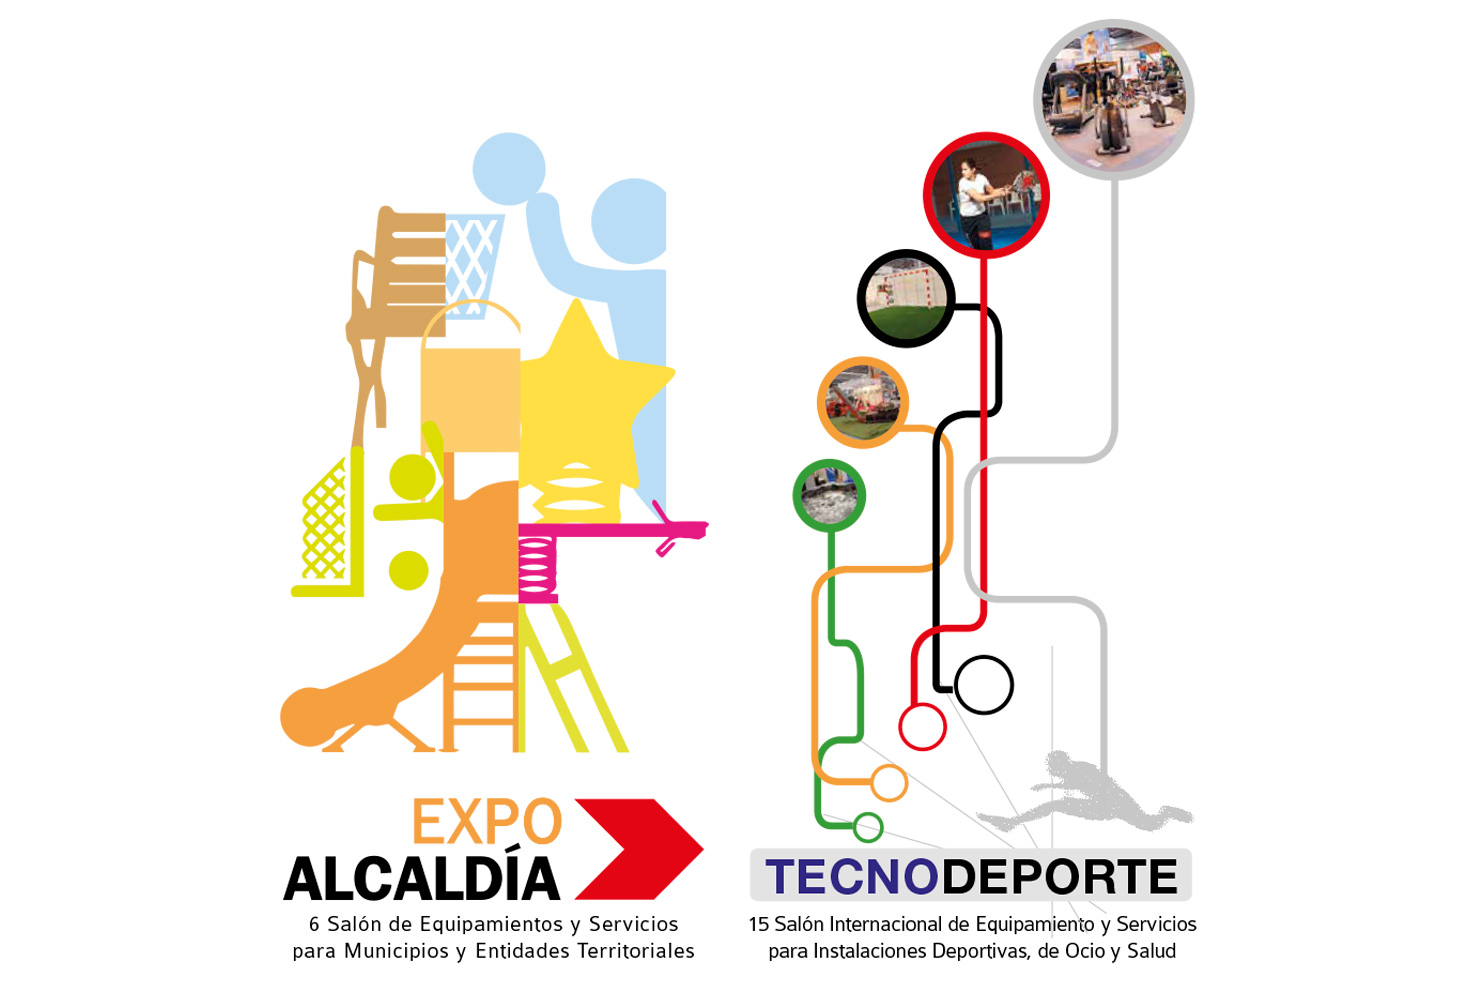 EXPOALCALDÍA y TECNODEPORTE 2016: referentes
para el análisis y el debate sobre equipamientos y
servicios en el ámbito municipal, deportivo y ocio.